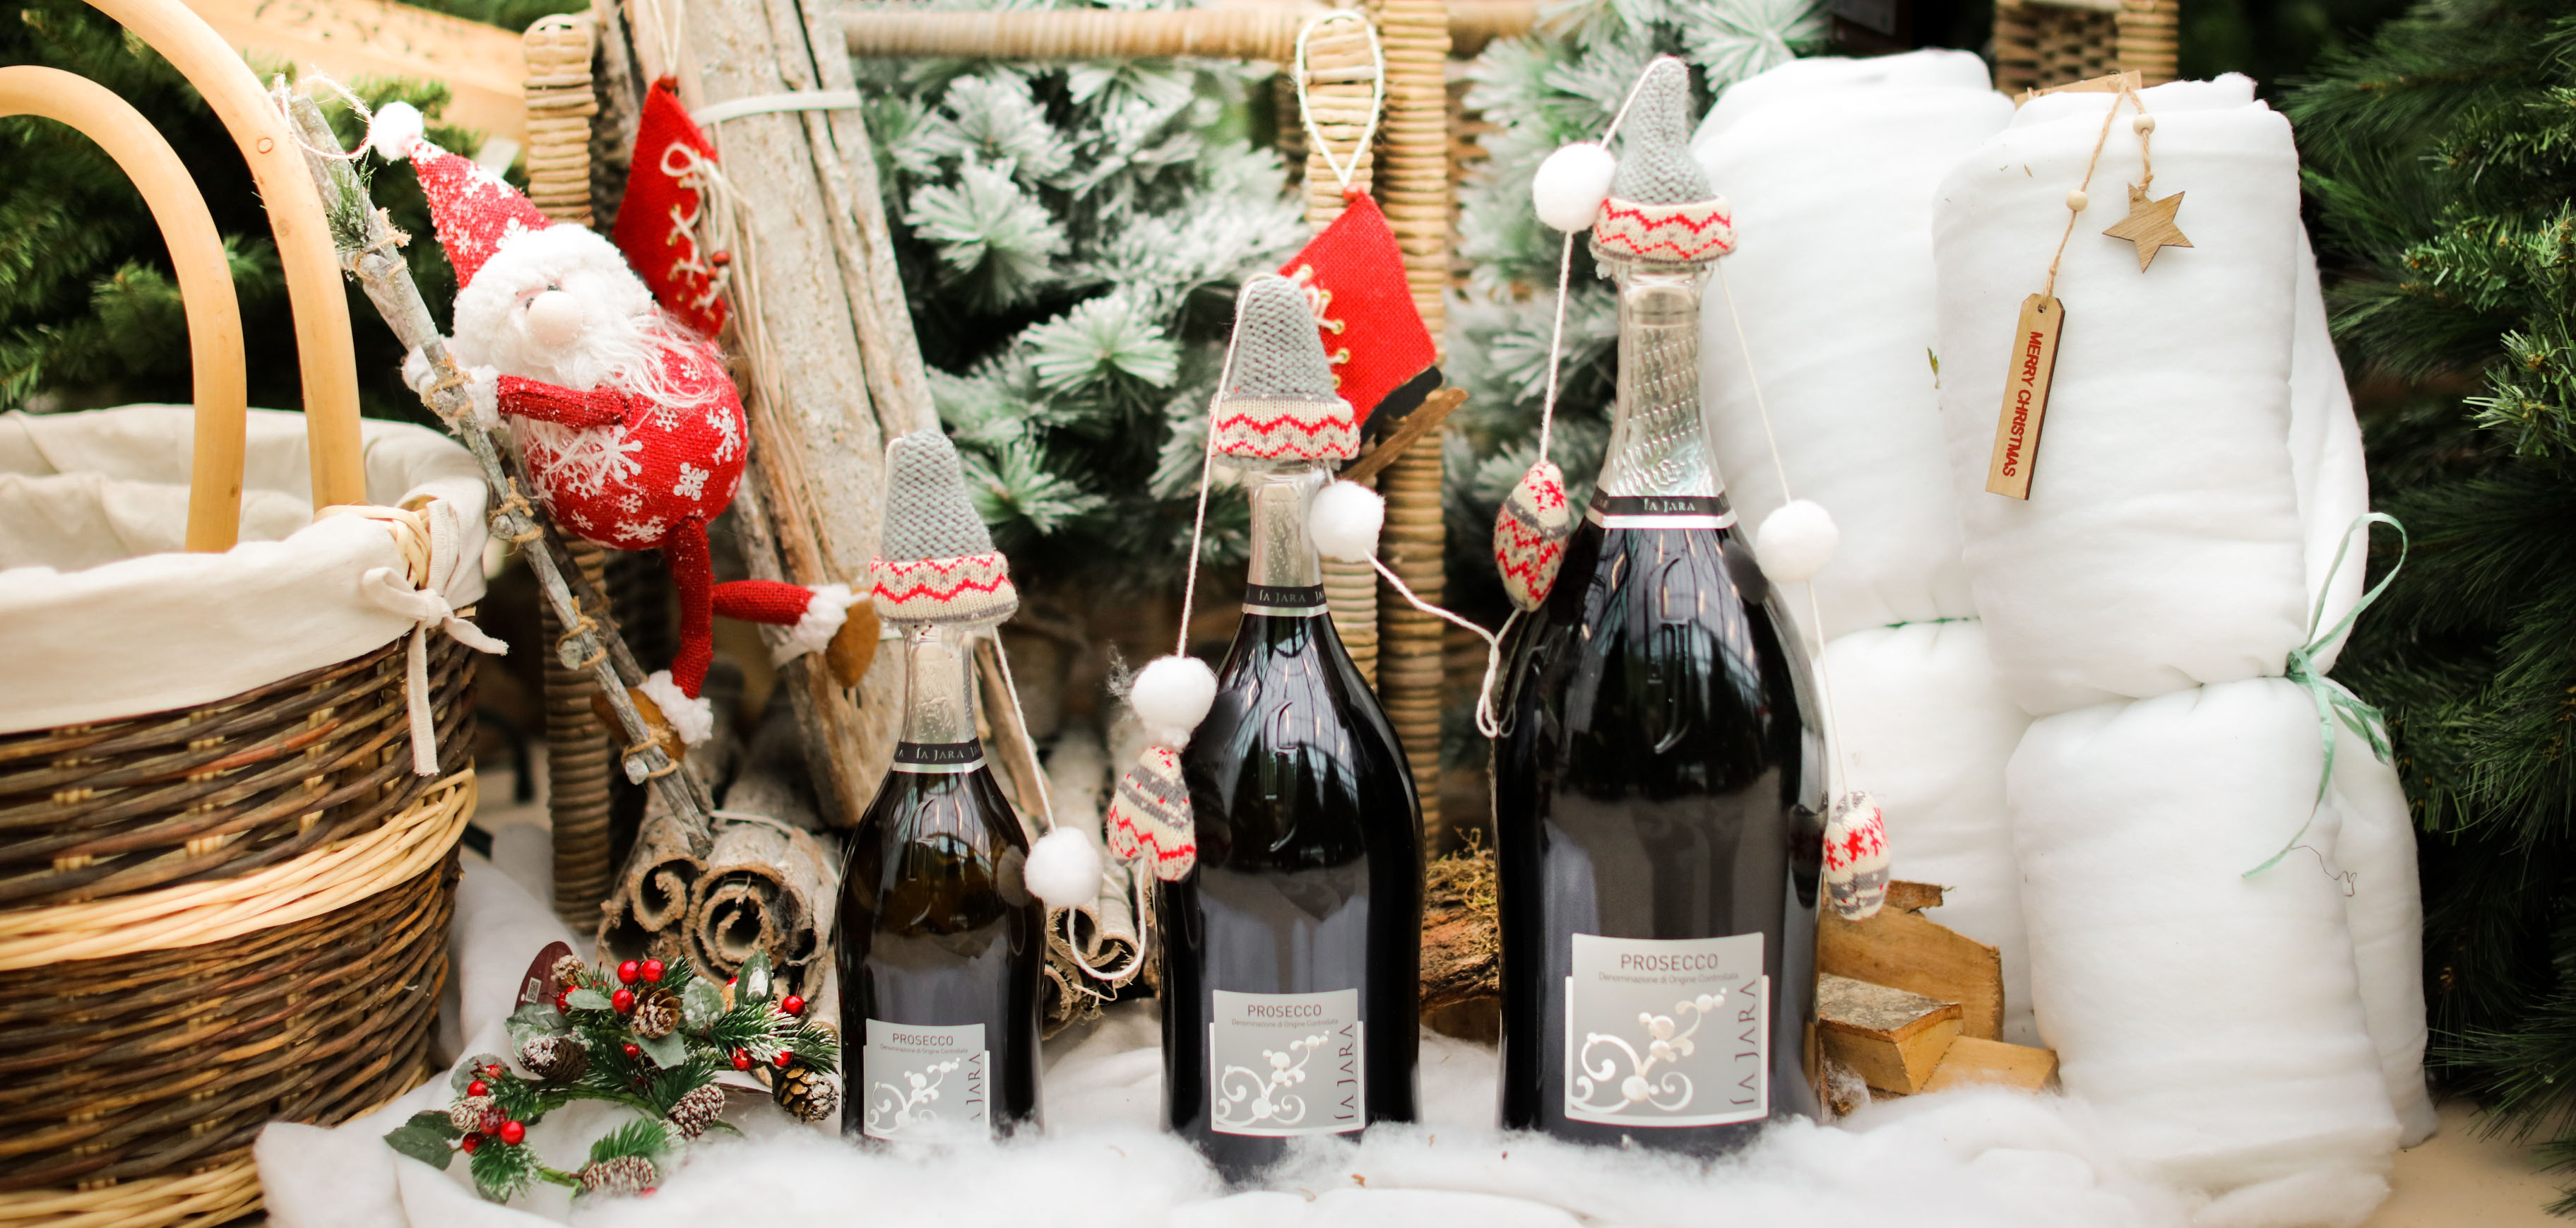 Ideas for Christmas dinner wine pairings